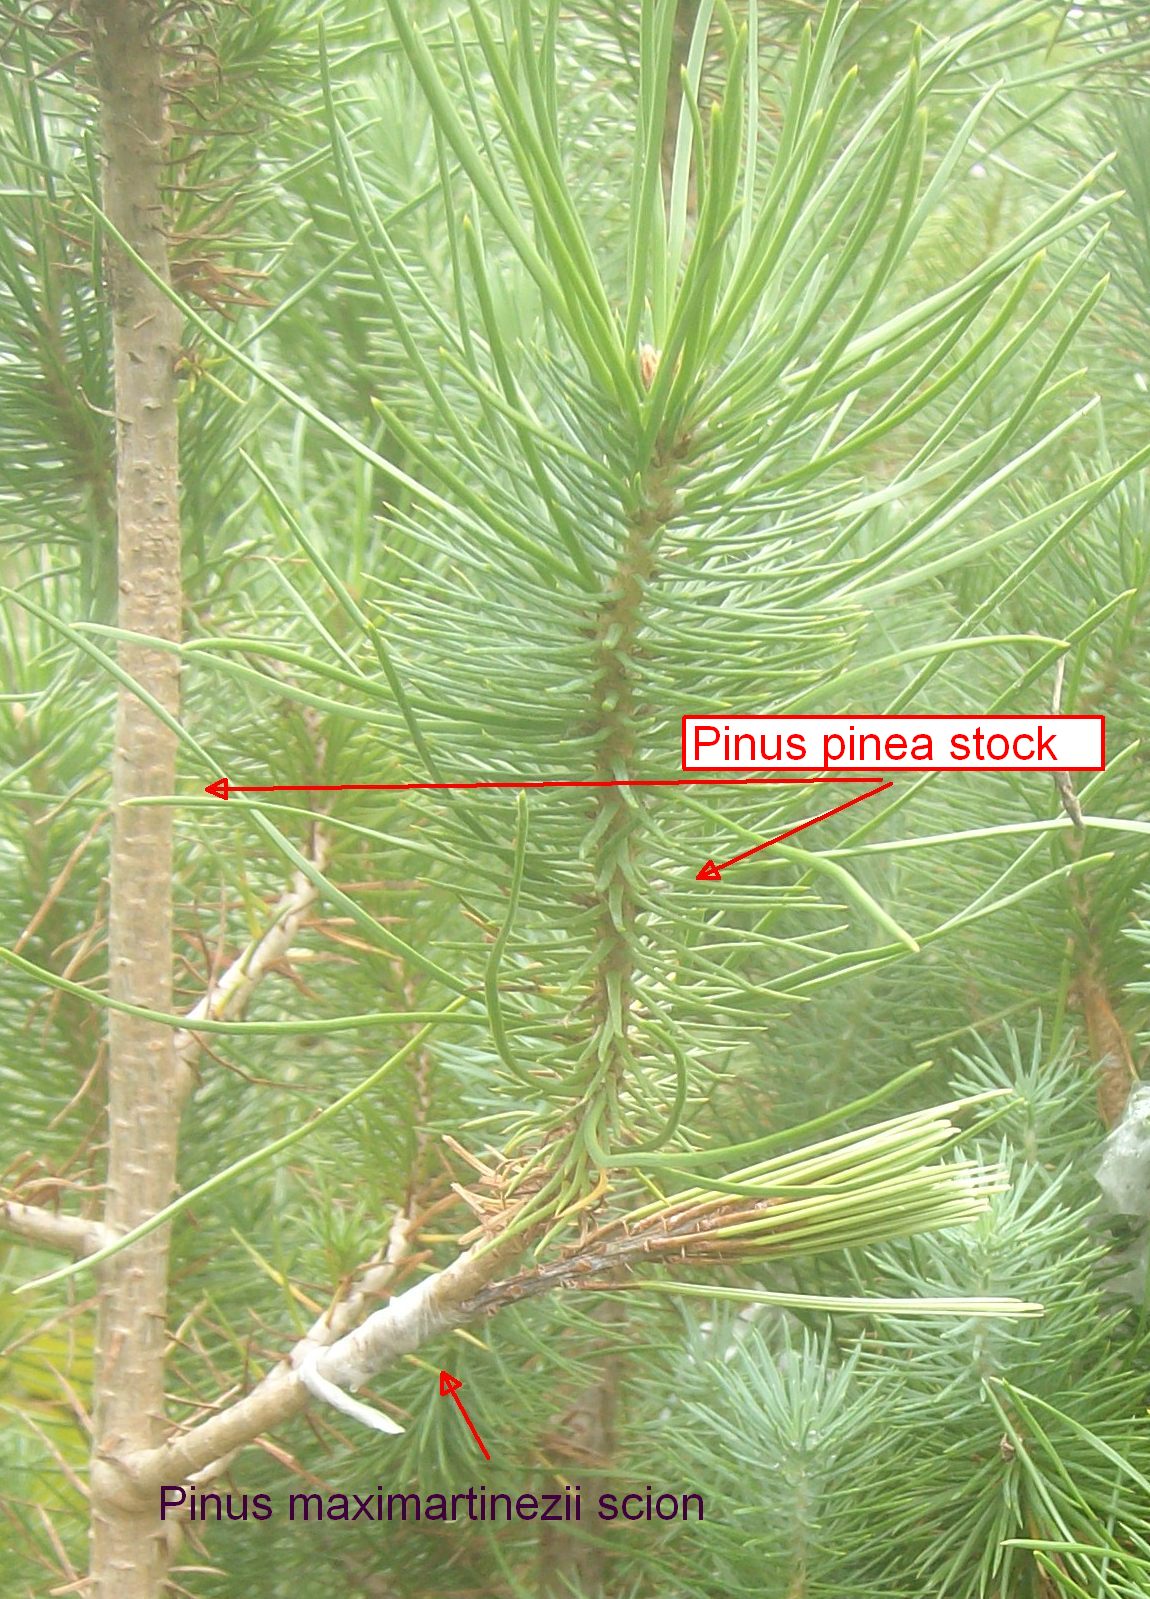 Pinus
              maximartinezii graft to Pinus pinea stock